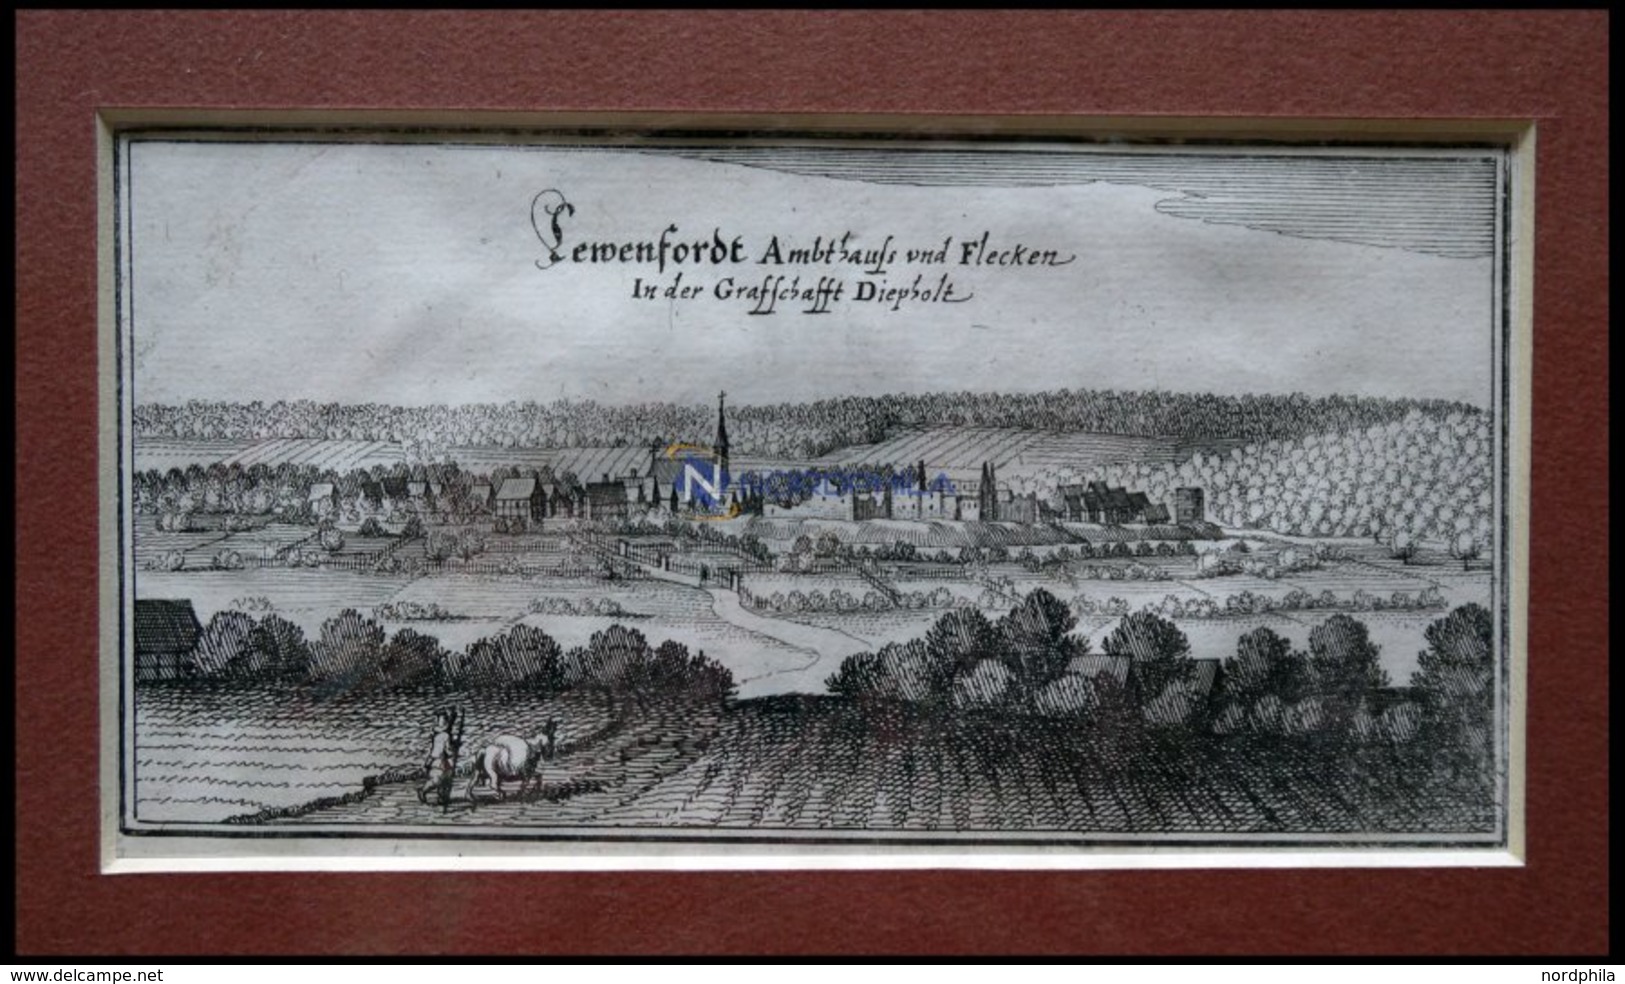 LEMFÖRDE, Gesamtansicht, Kupferstich Von Merian Um 1645 - Lithographies